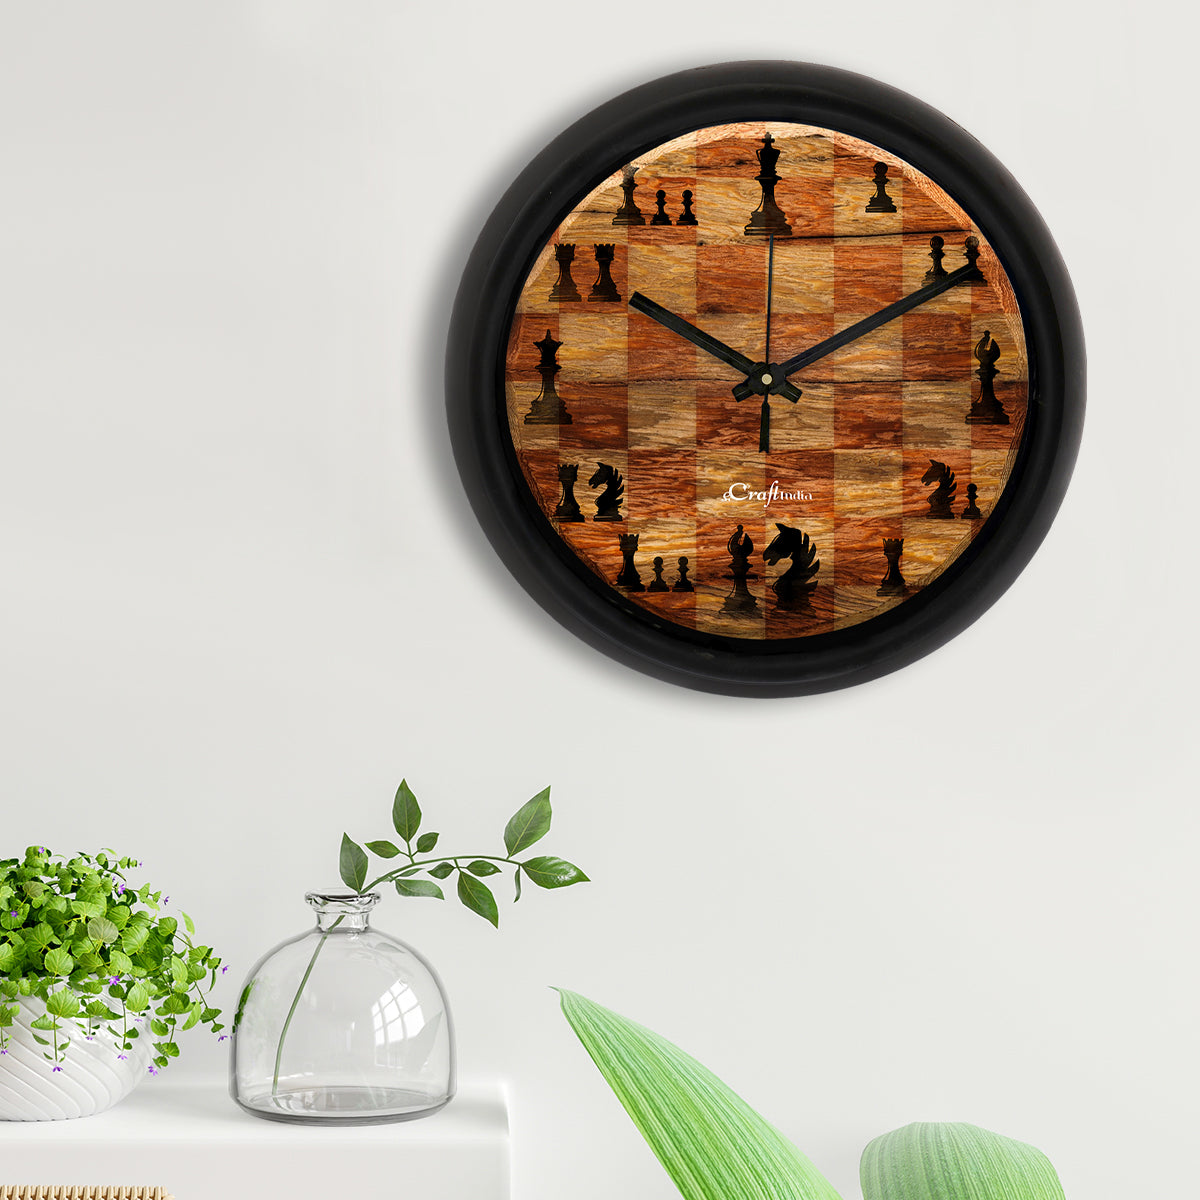 Chess Game Theme Round Shape Analog Designer Wall Clock 2